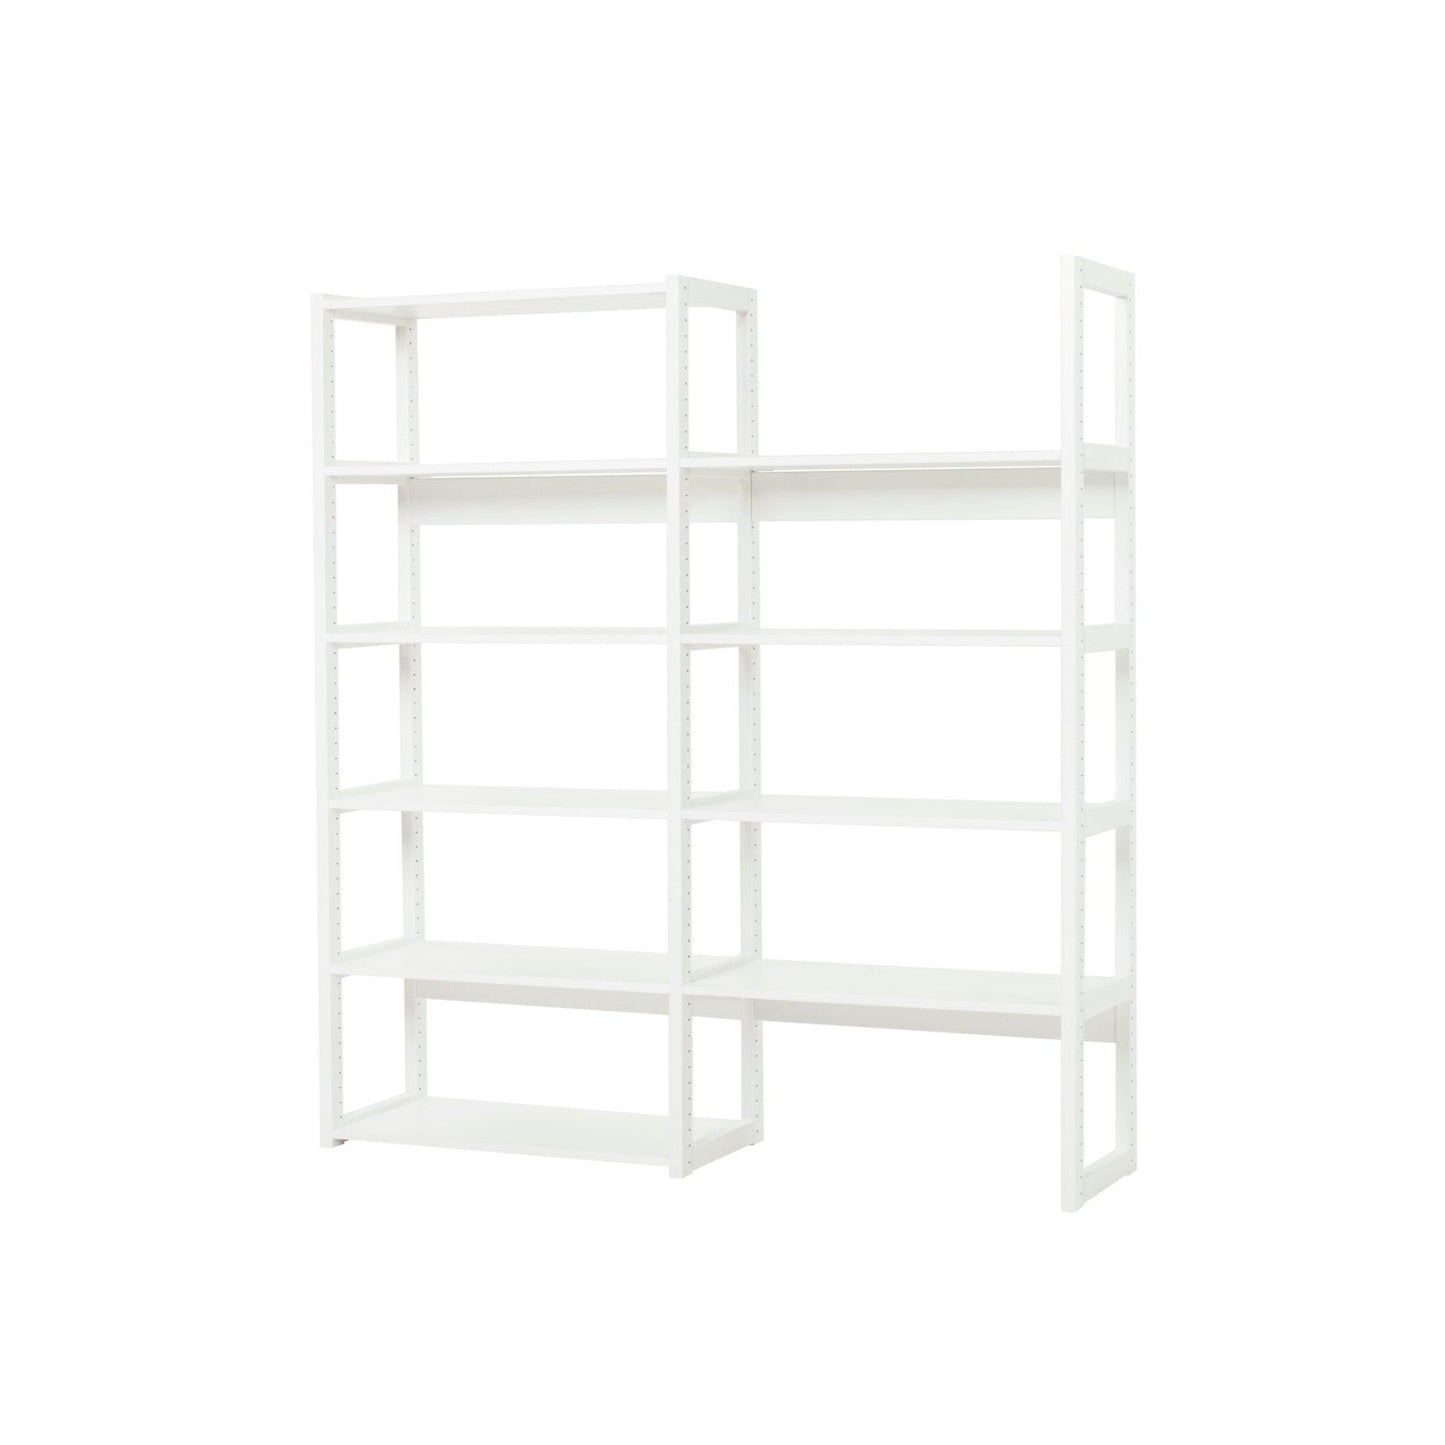 Hoppekids 'Storey' Shelving Unit - 8 Shelves (2 Shelf Sizes Available)